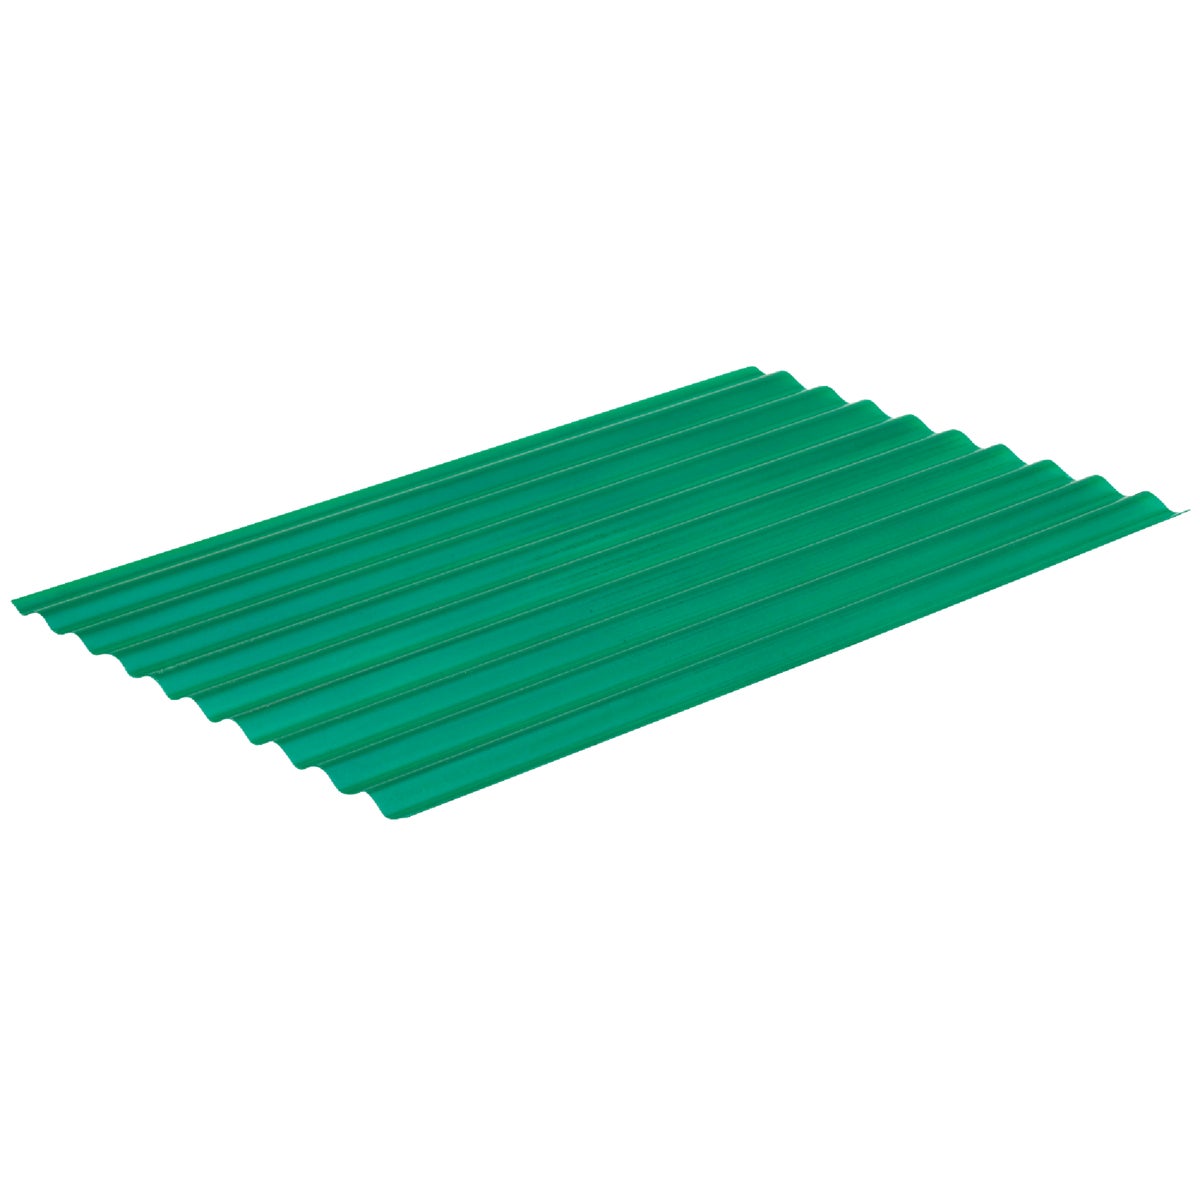 Sequentia Super600 26 In. x 12 Ft. Green Round Fiberglass Corrugated Panels